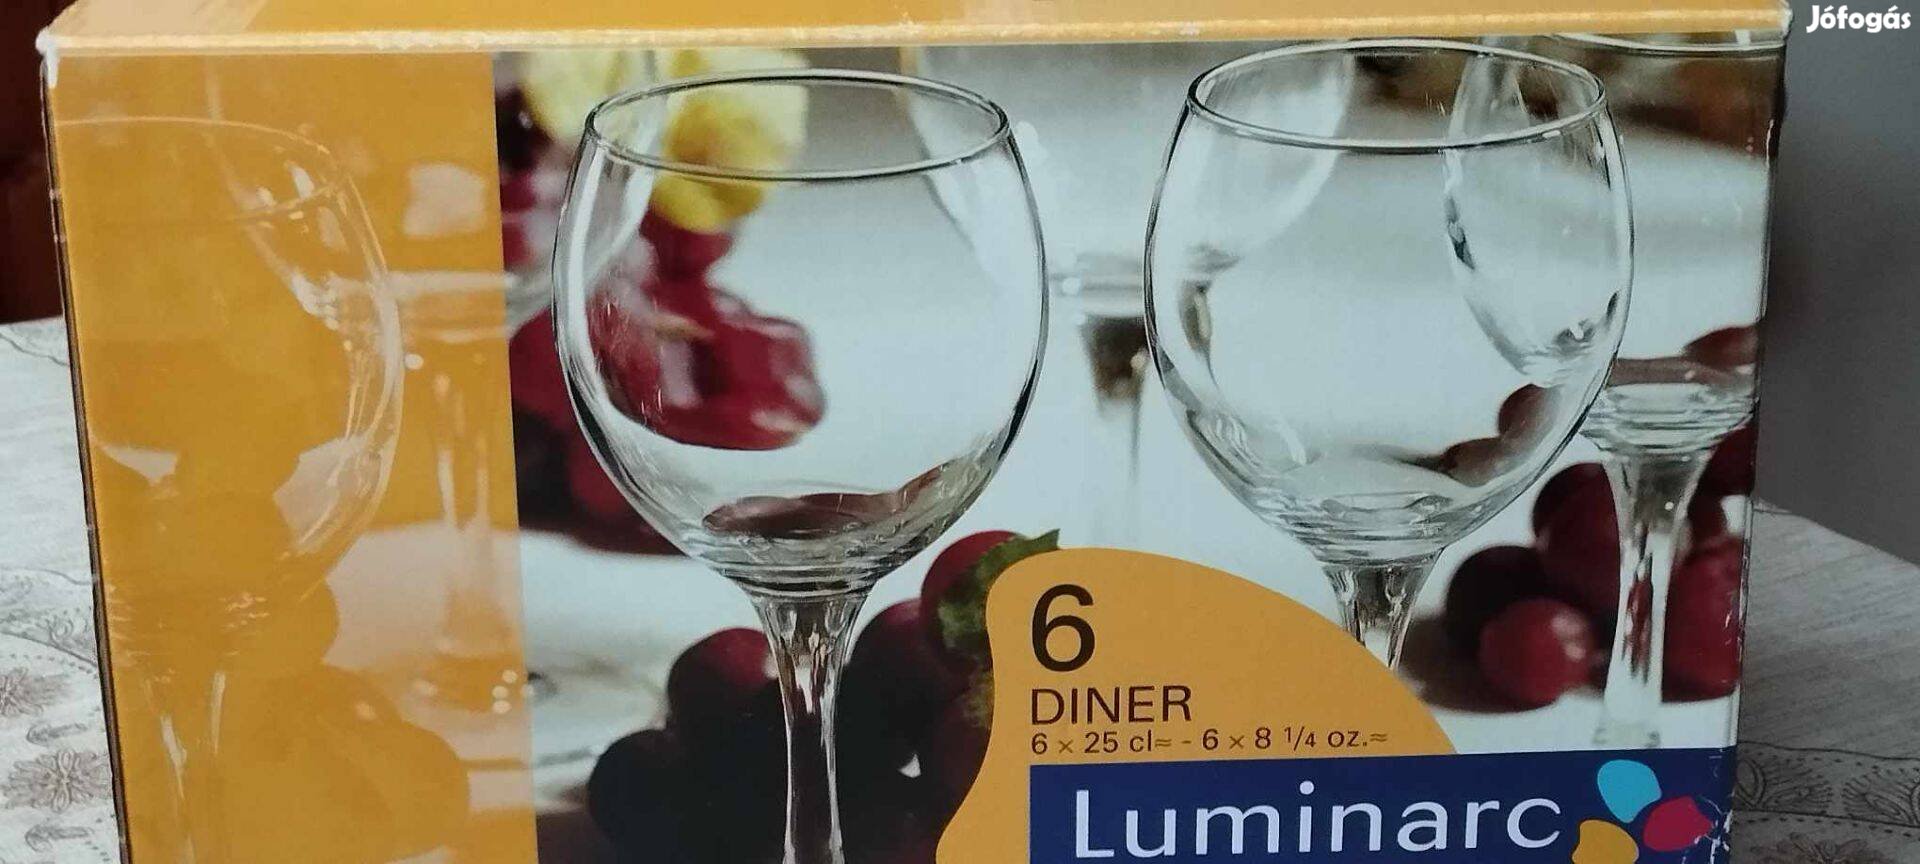 Új Luminarc 6 db borospohár készlet eladó